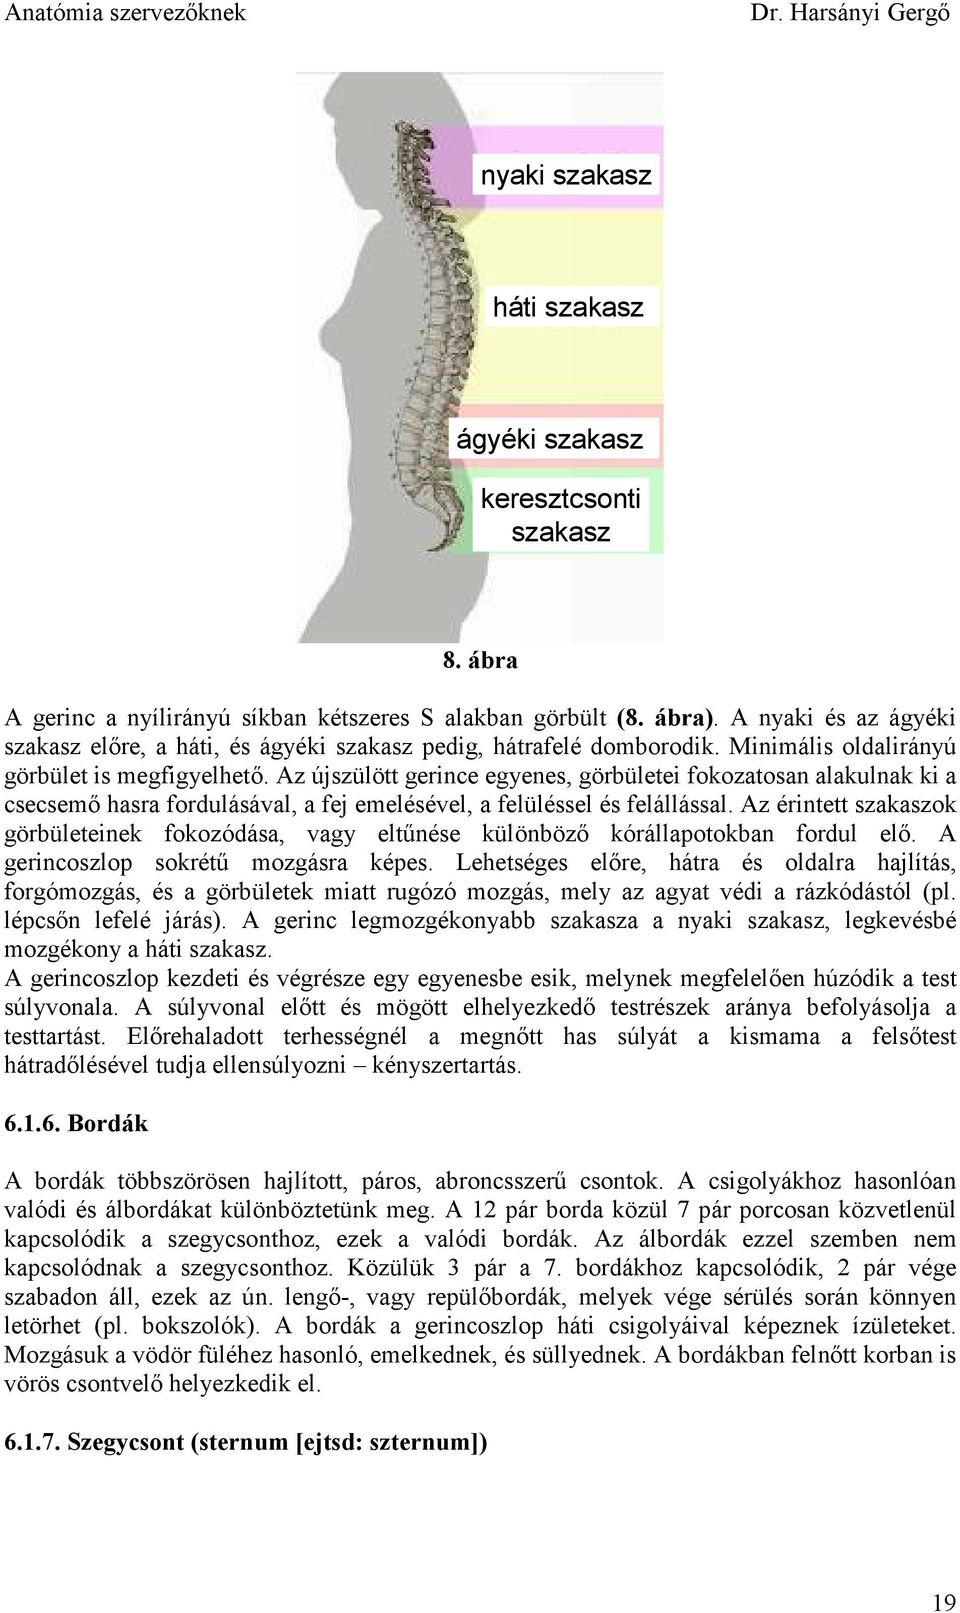 Az újszülött gerince egyenes, görbületei fokozatosan alakulnak ki a csecsemı hasra fordulásával, a fej emelésével, a felüléssel és felállással.